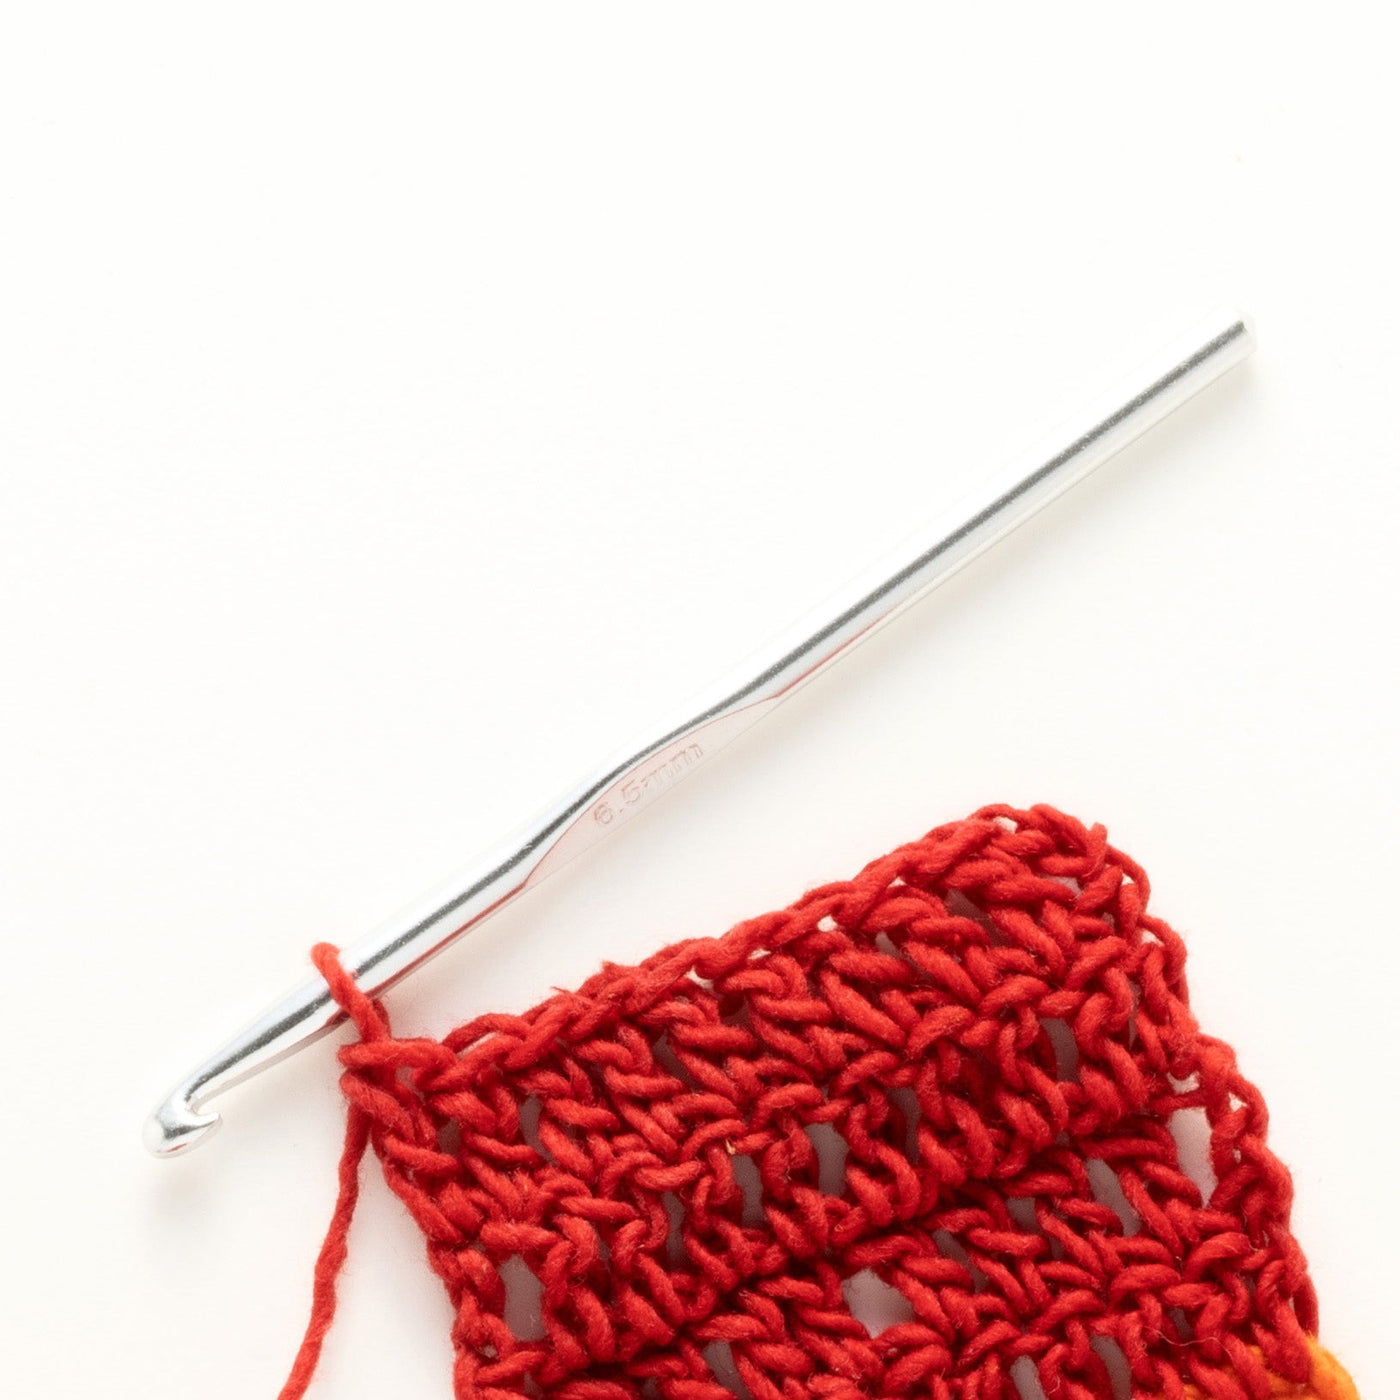 Aluminum Crochet Hook for Potholder Kits